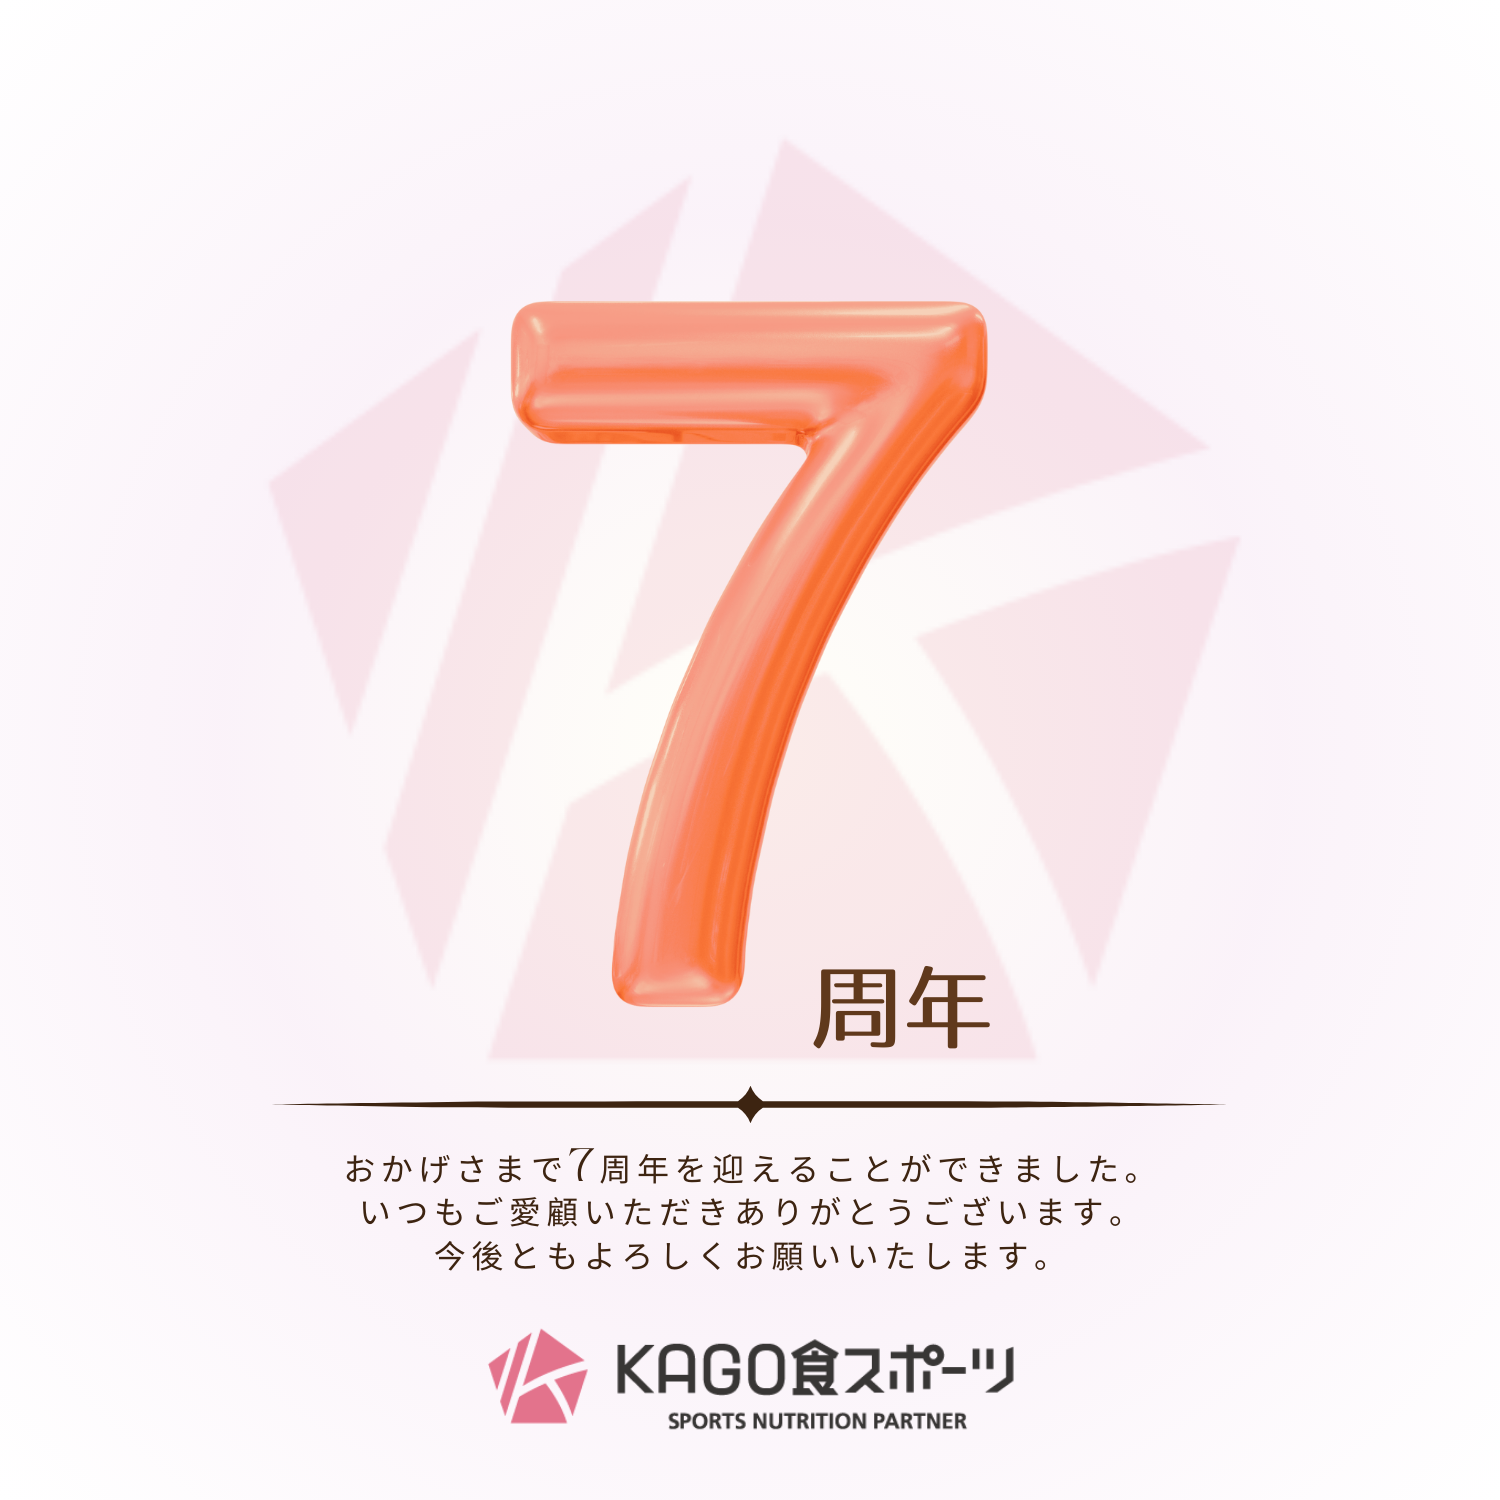 KAGO食スポーツ７周年のご挨拶